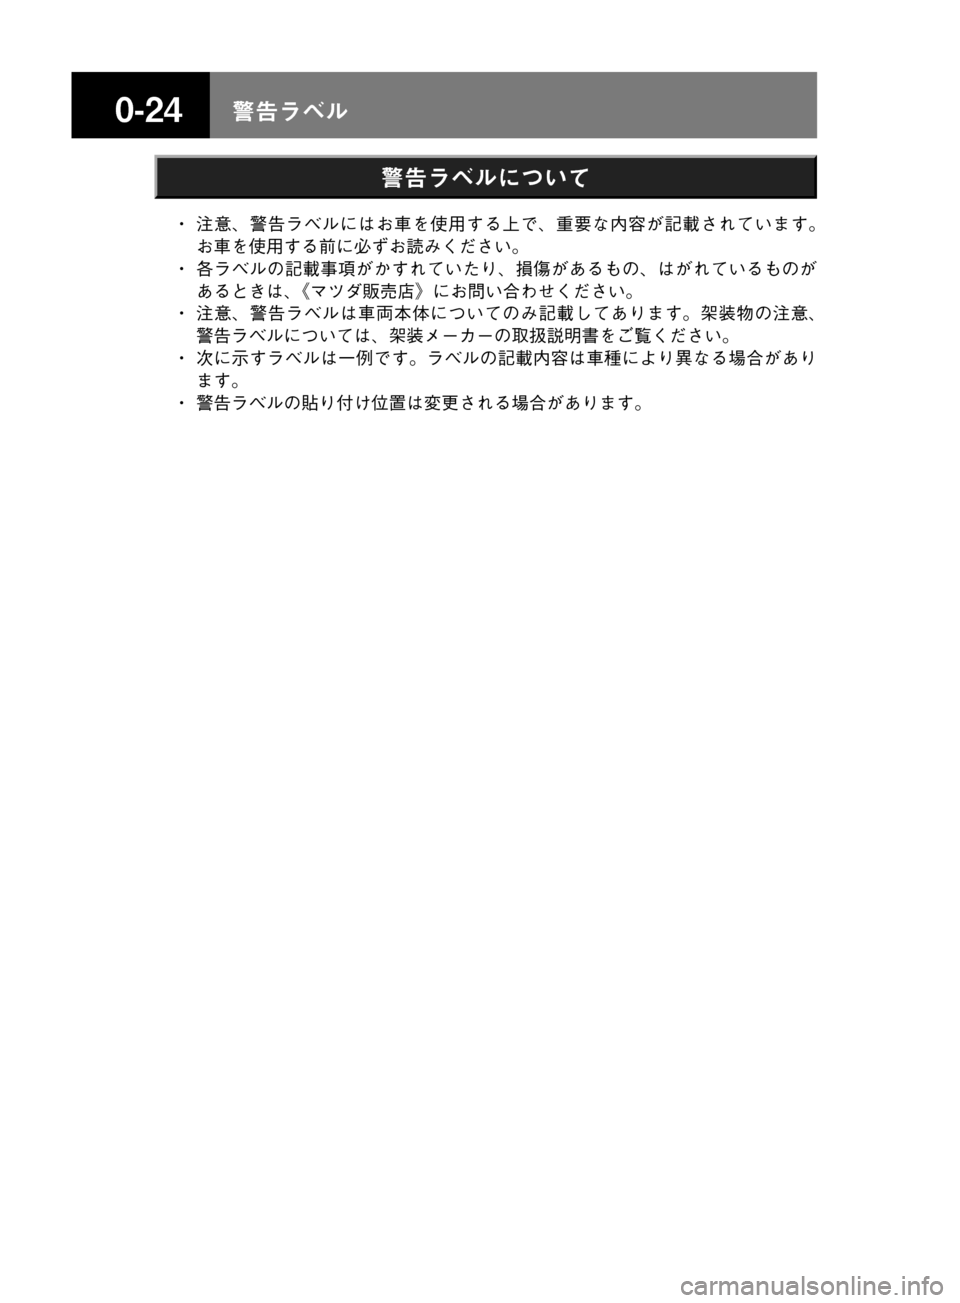 MAZDA MODEL TITAN 2013  タイタン｜取扱説明書 (in Japanese) ����/åÕç
/åÕçtmMo
� ~�